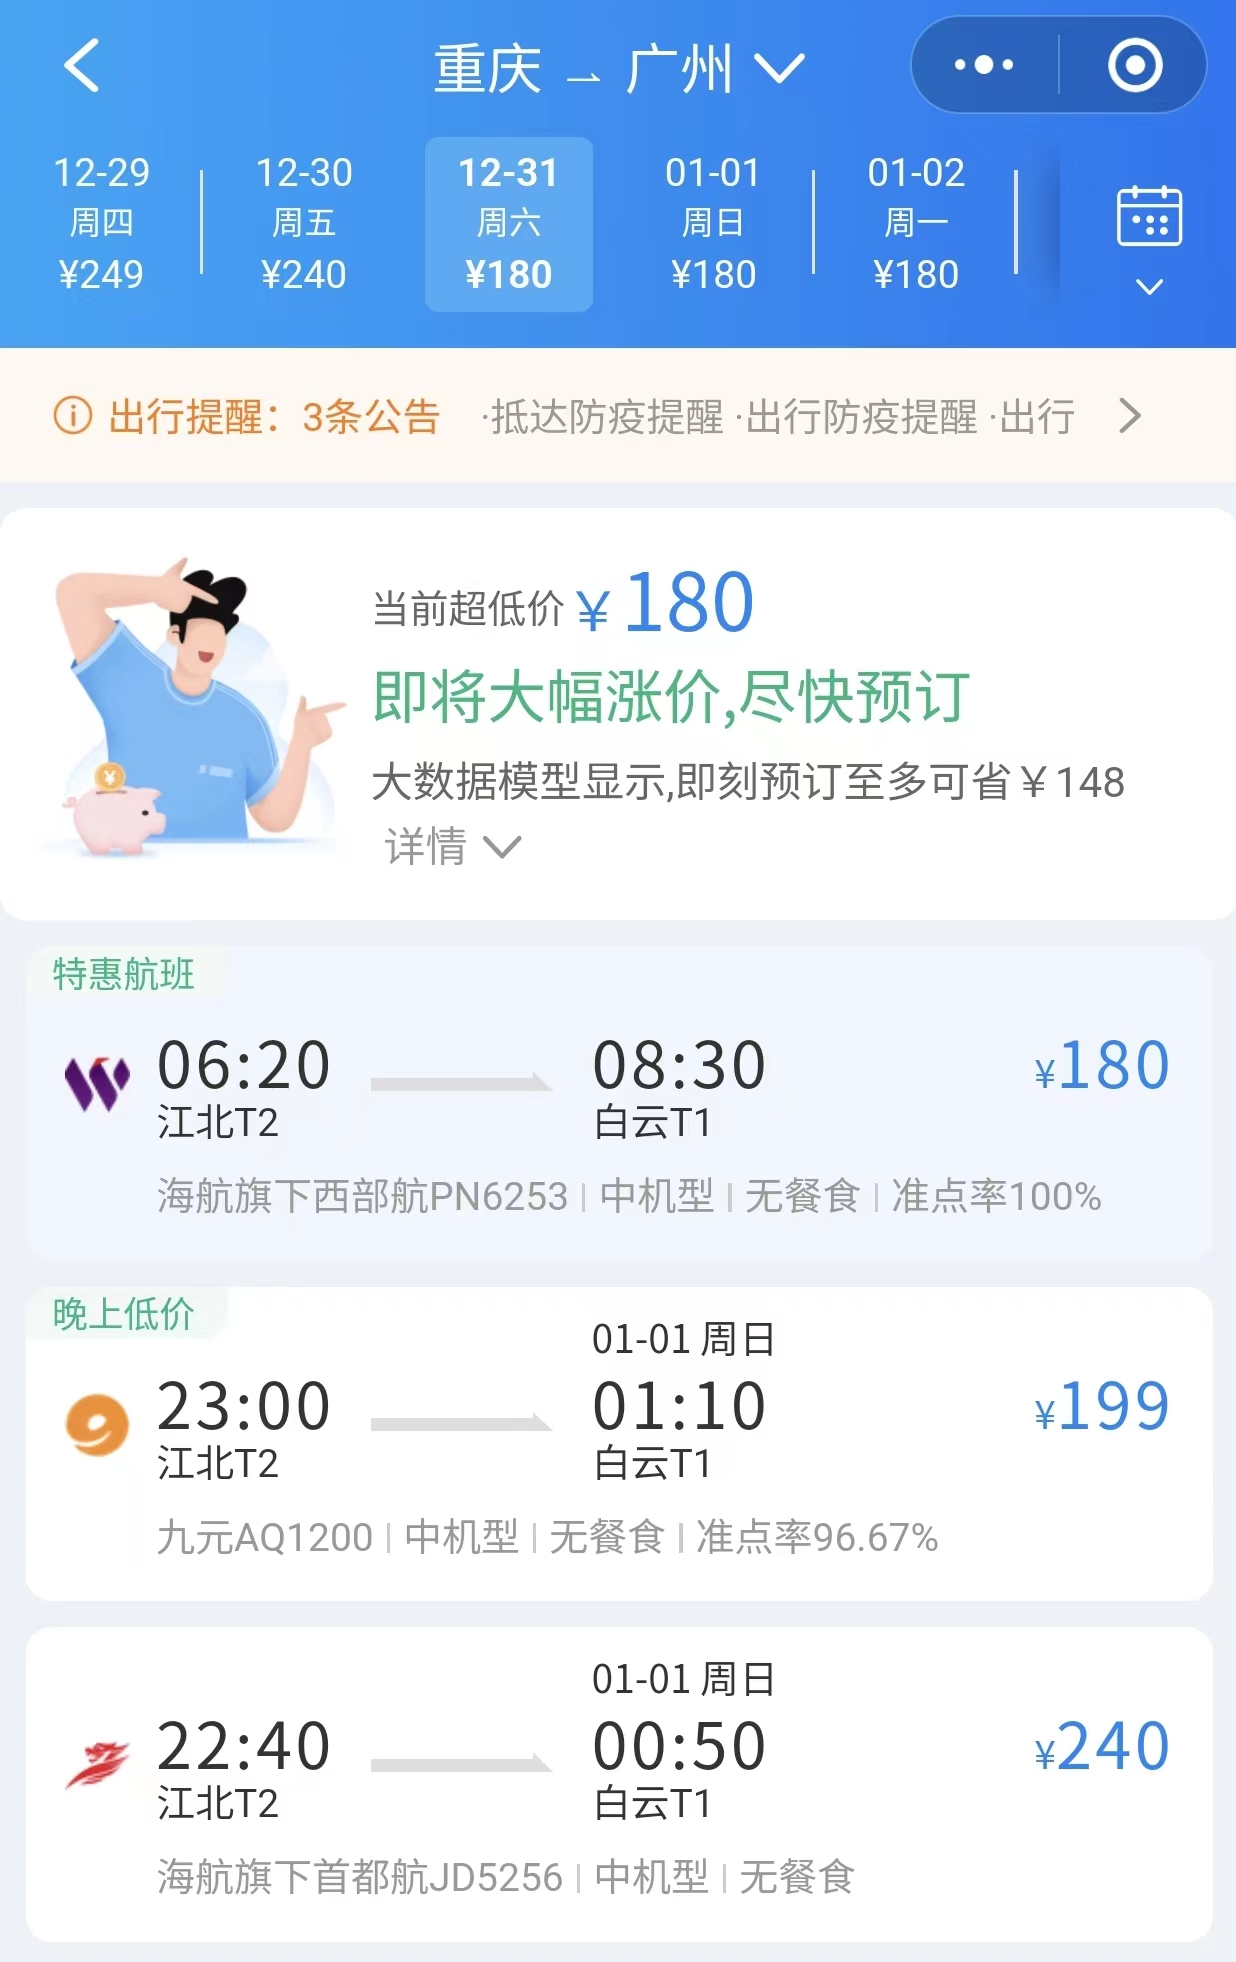 【回家之旅】“神州行” 广州到重庆 CA4320 B789公务舱-中国国航-飞客网